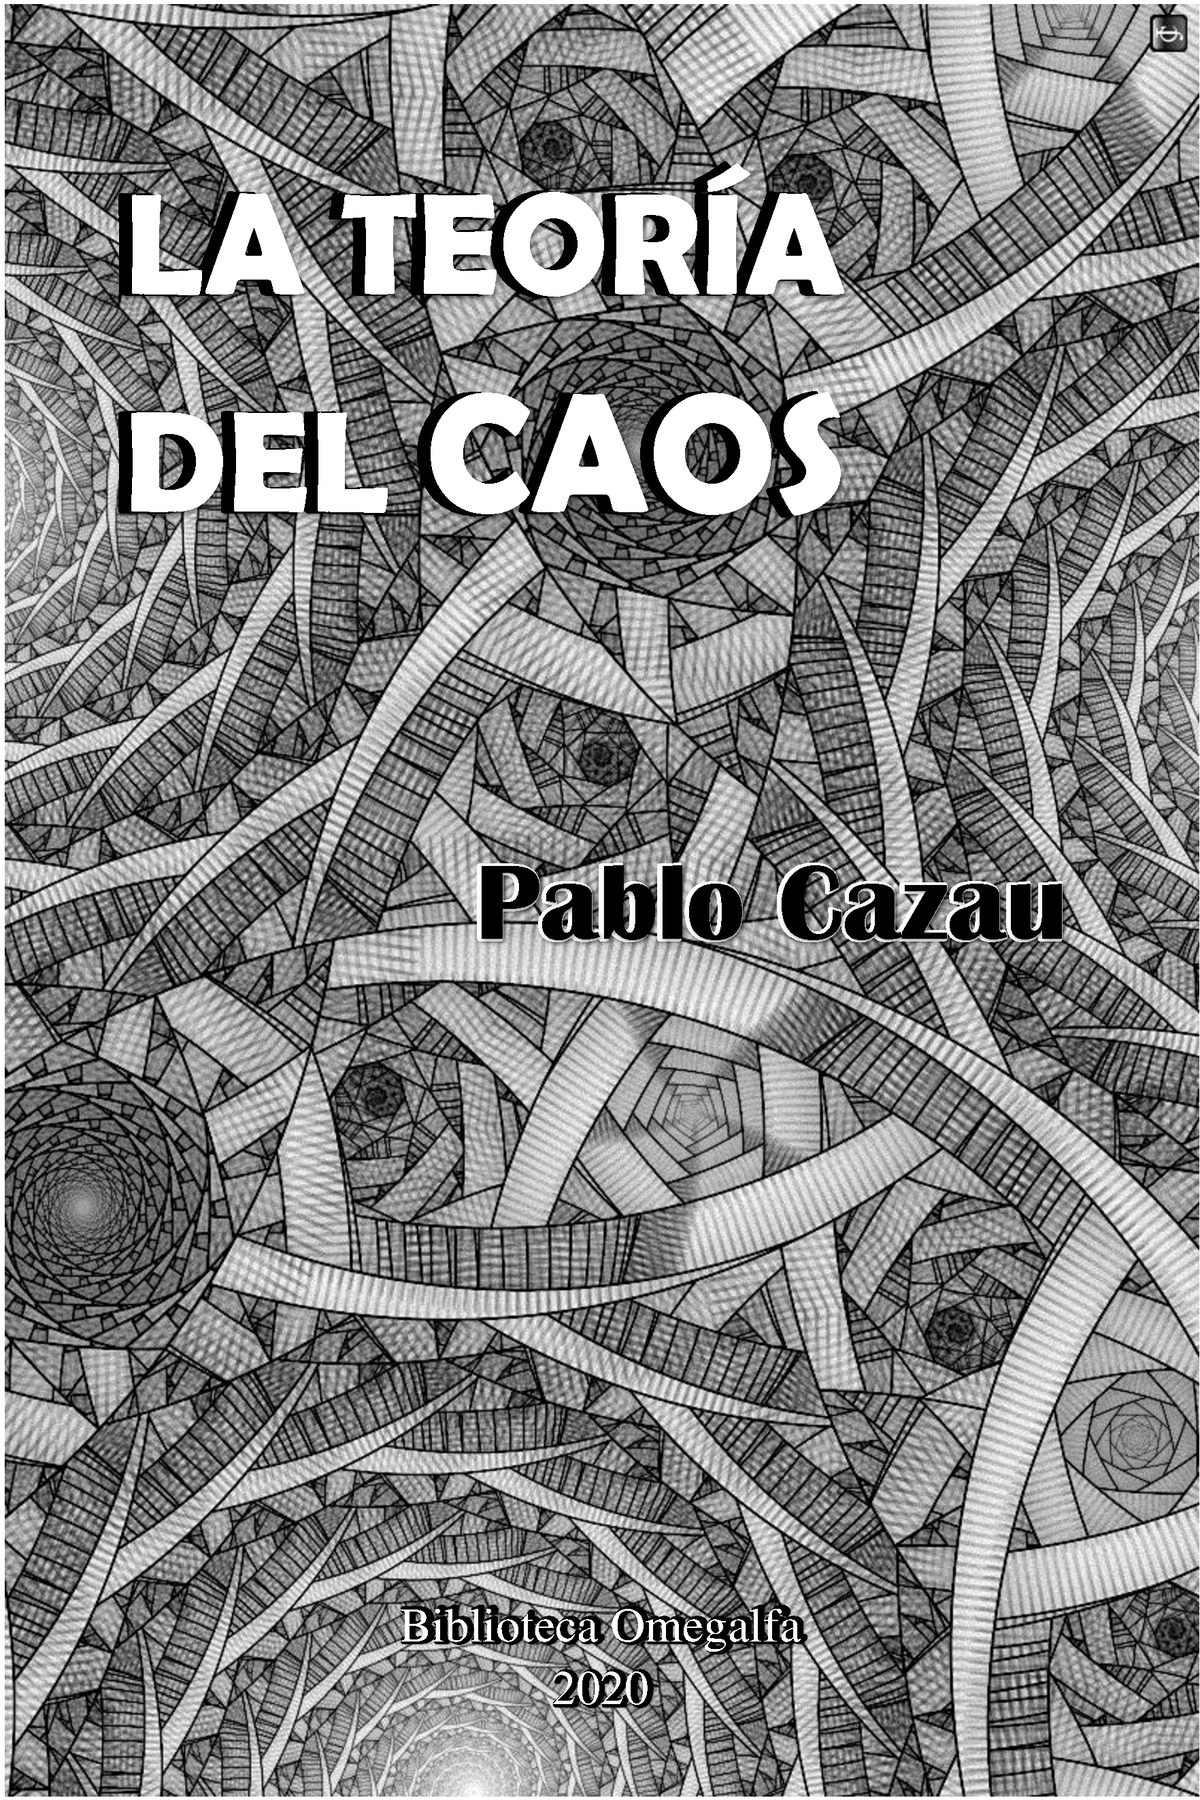 La Teoria Del Caos Caos La TeorÍa Del Caos Pablo Cazau Biblioteca Omegalfa 2020 La Teoría 6331